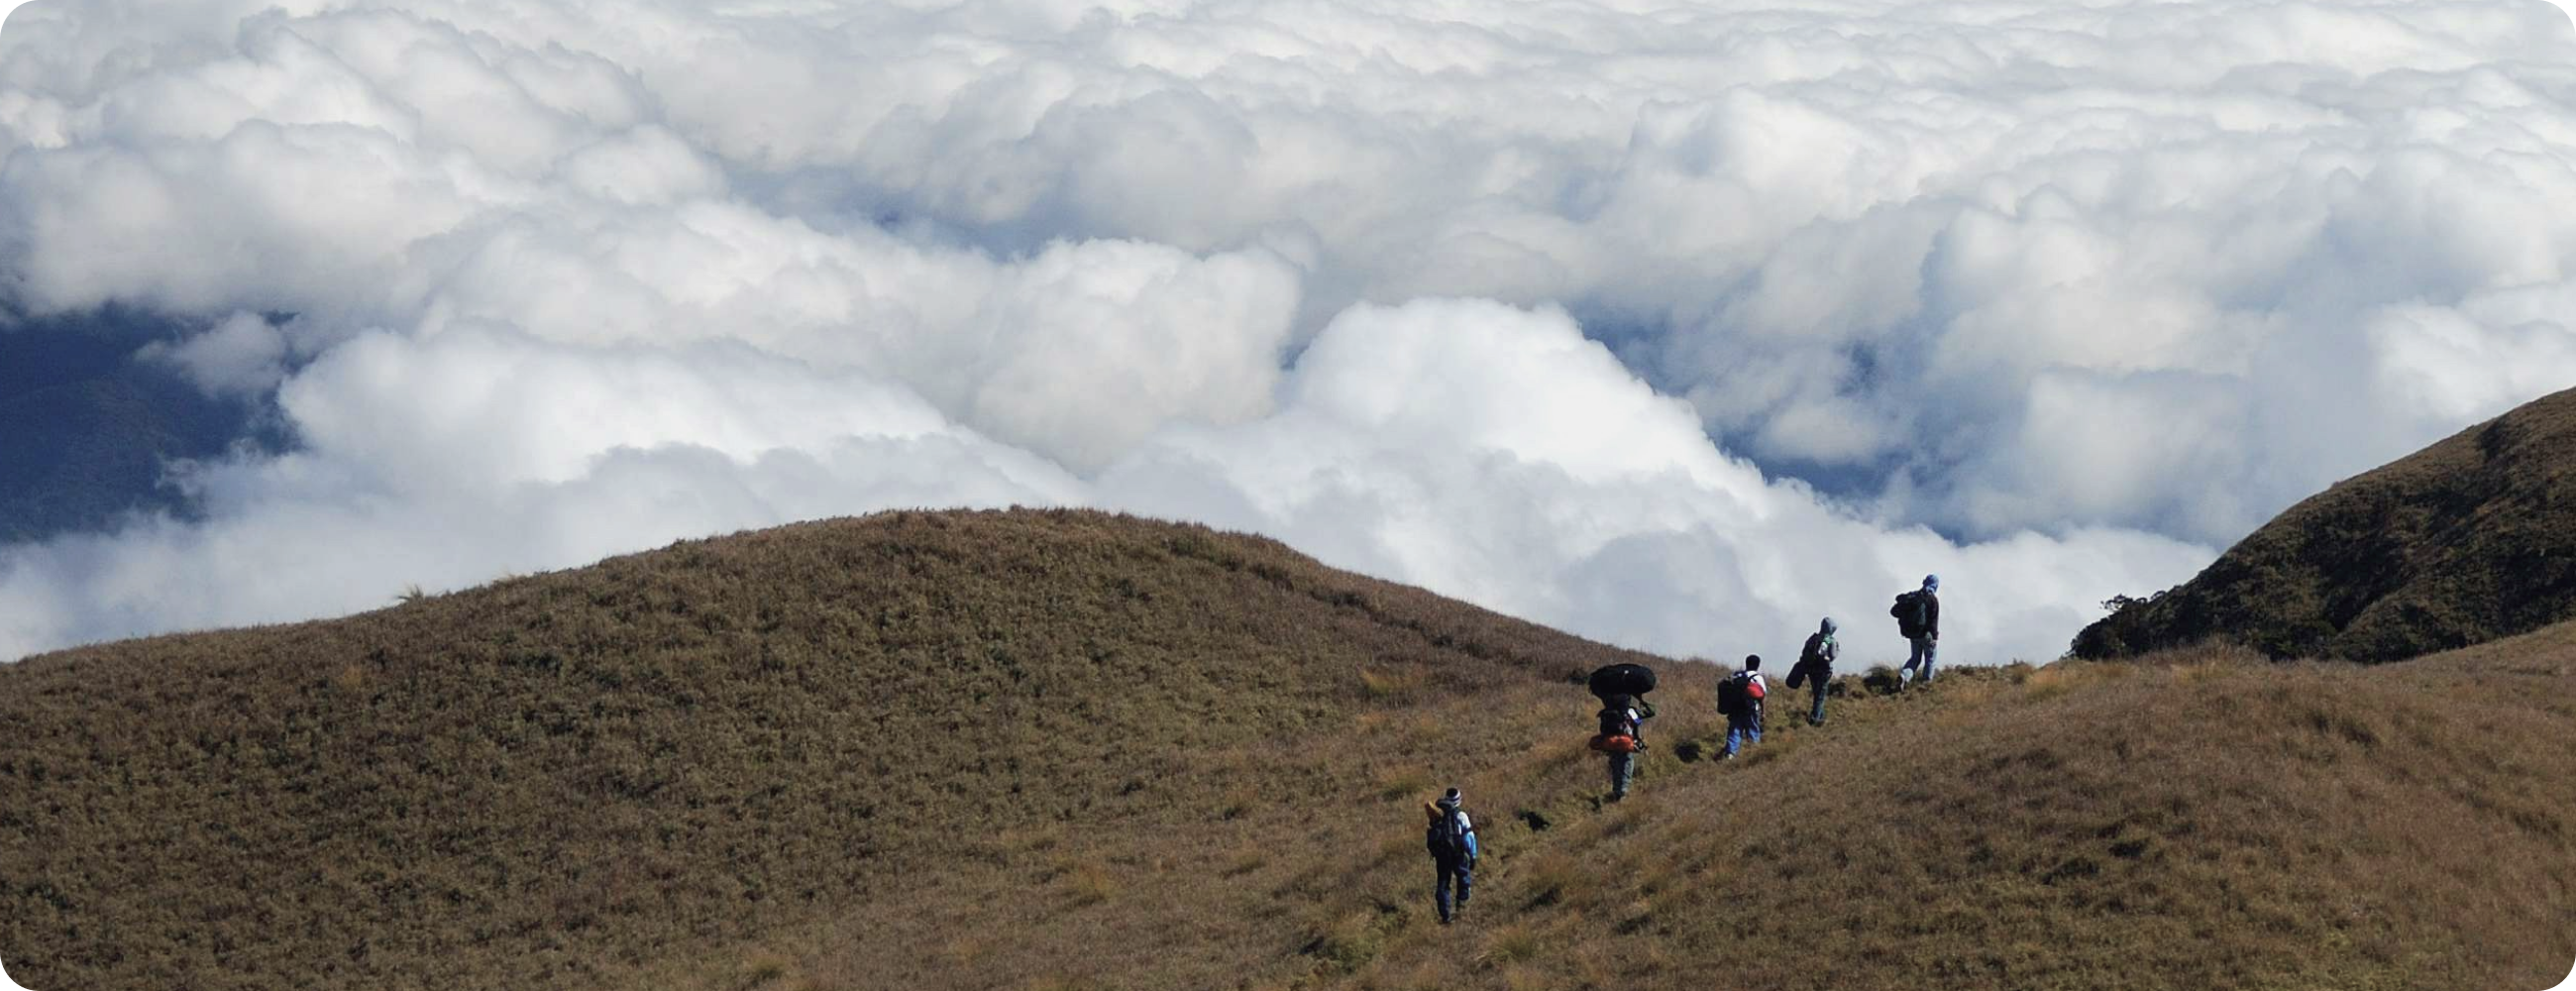 山頂に近い稜線をハイキングする一群の登山者たちが、雲海の上を歩いている